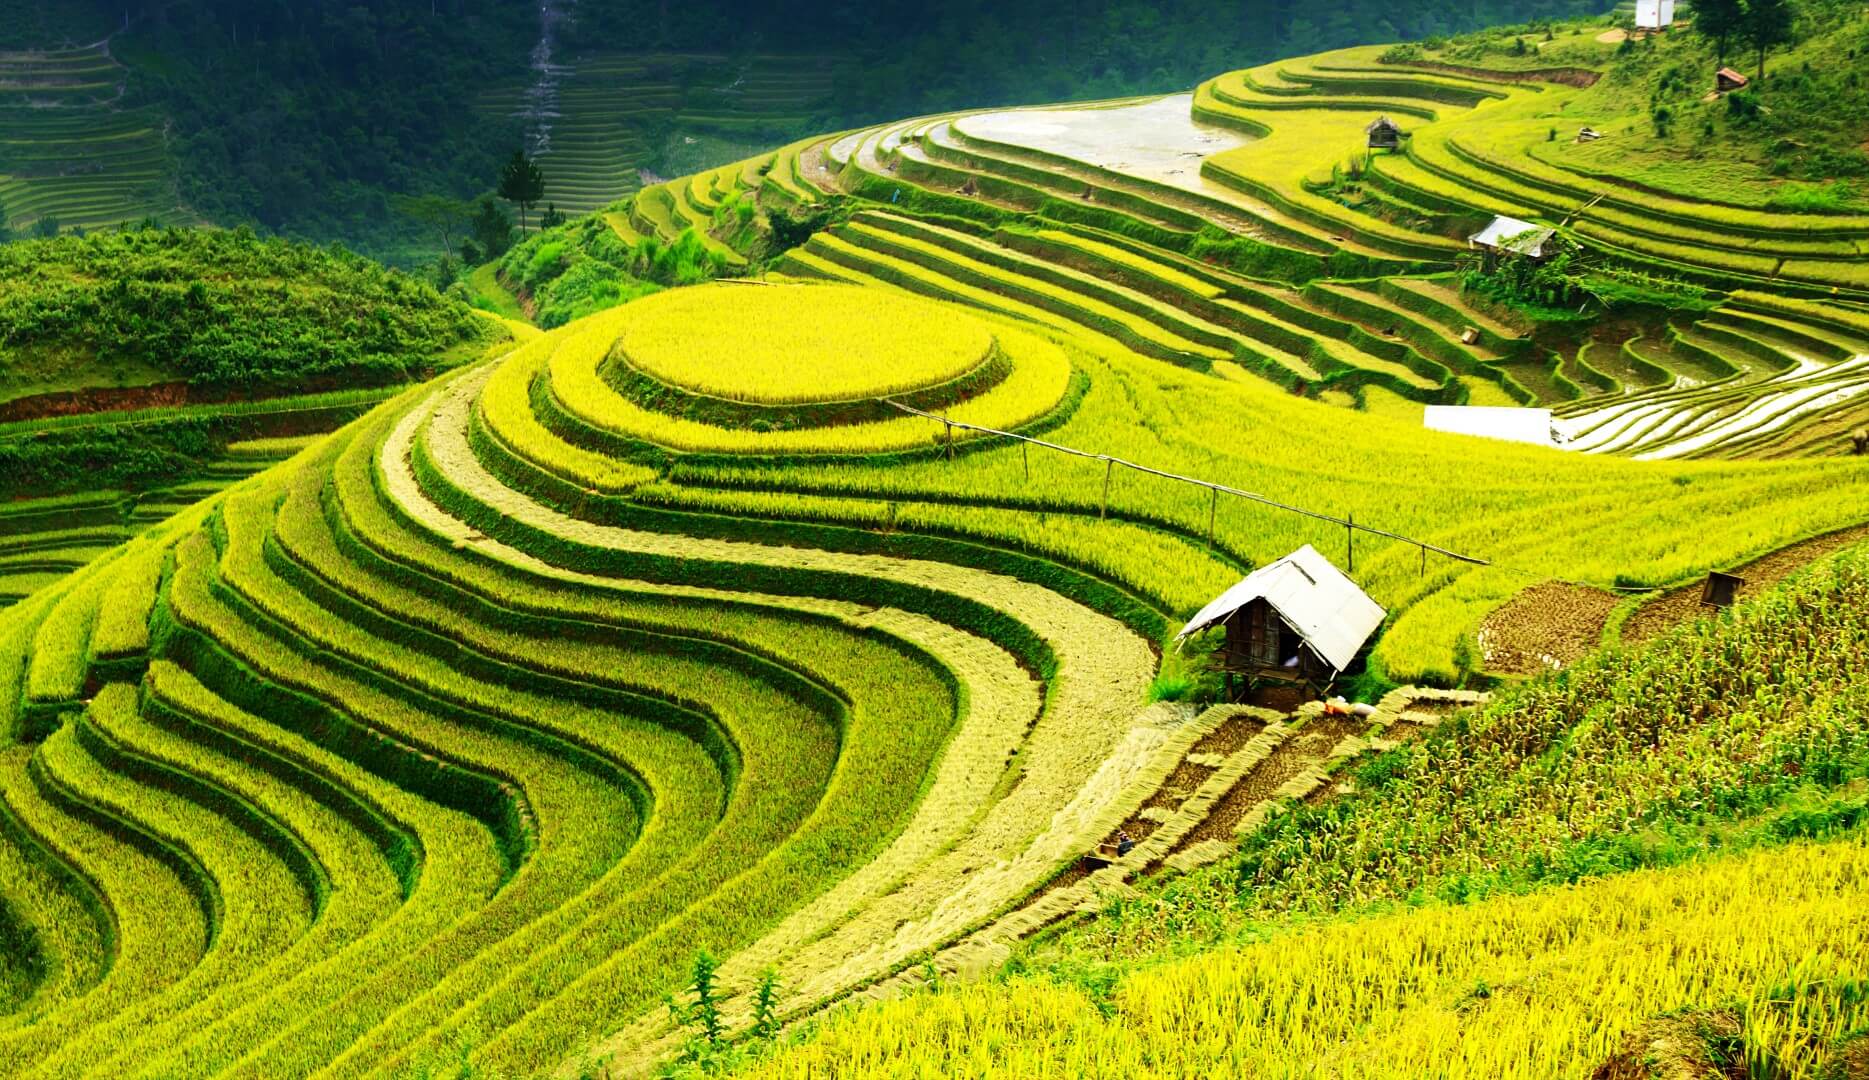 Bộ trưởng Lê Minh Hoan dùng hình ảnh ruộng bậc thang để nói về phát triển nông nghiệp cho khu vực trung du, miền núi phía Bắc. Ảnh minh họa.